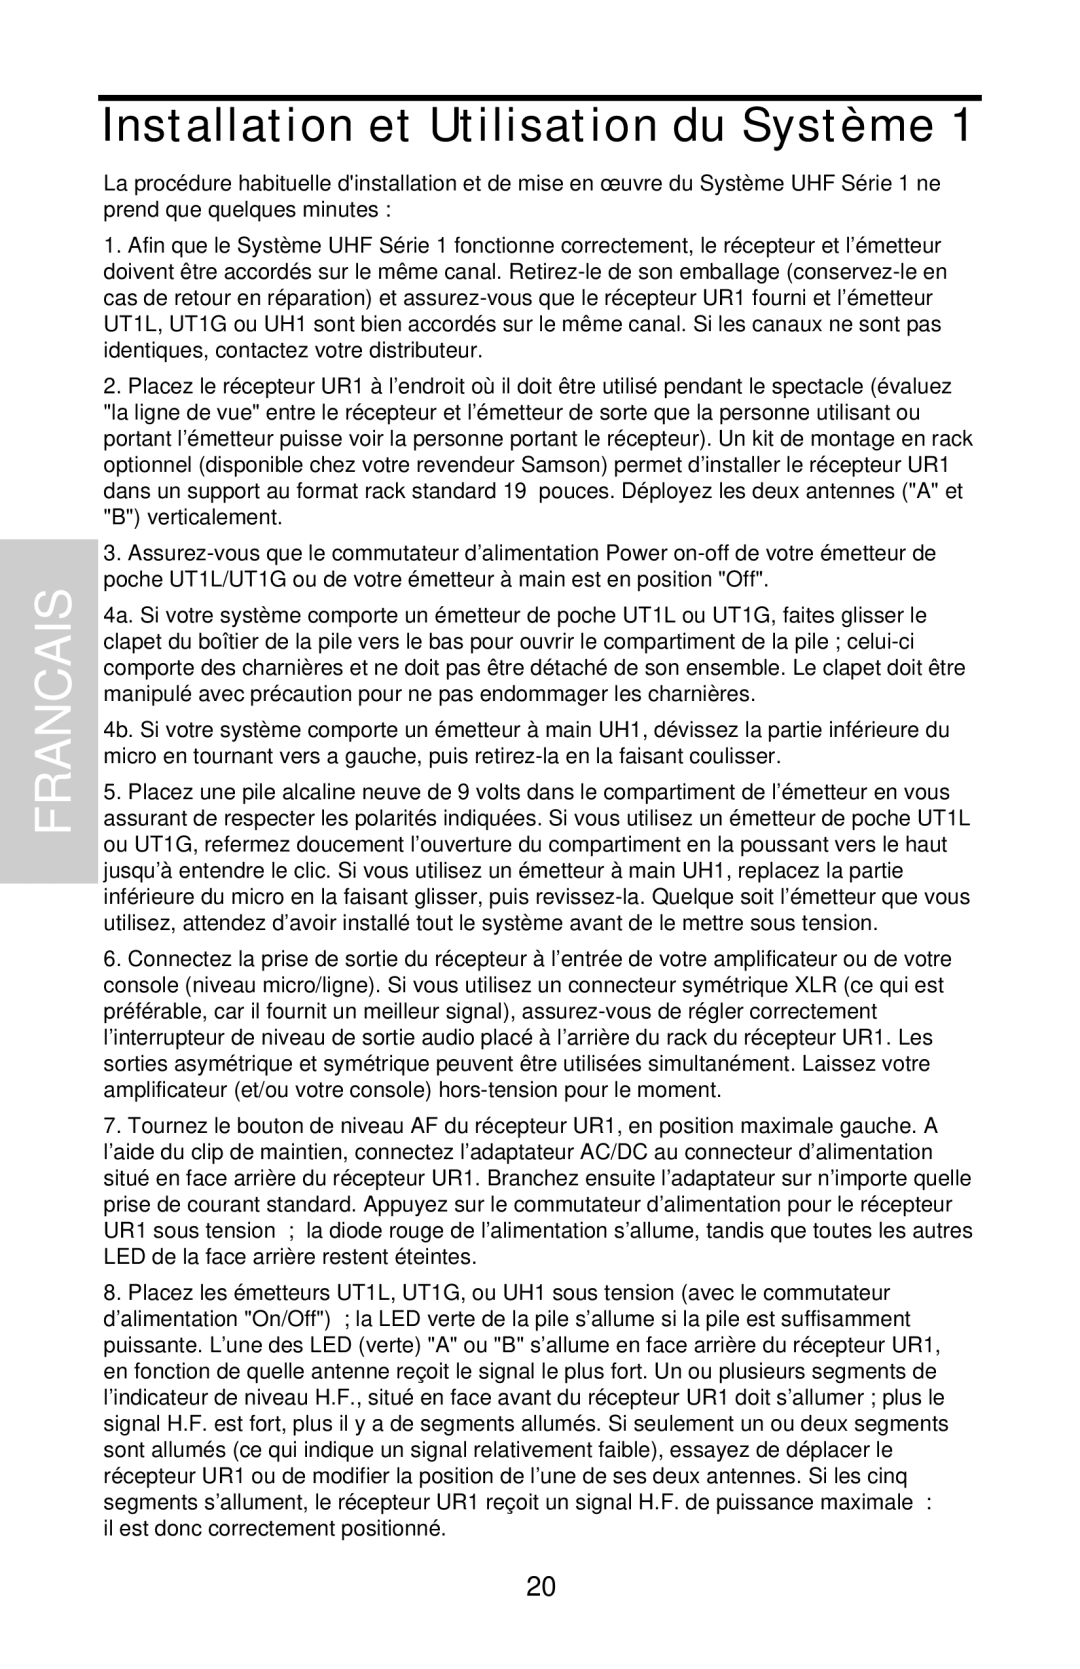 Samson UHF 801 owner manual Installation et Utilisation du Système, Francais 